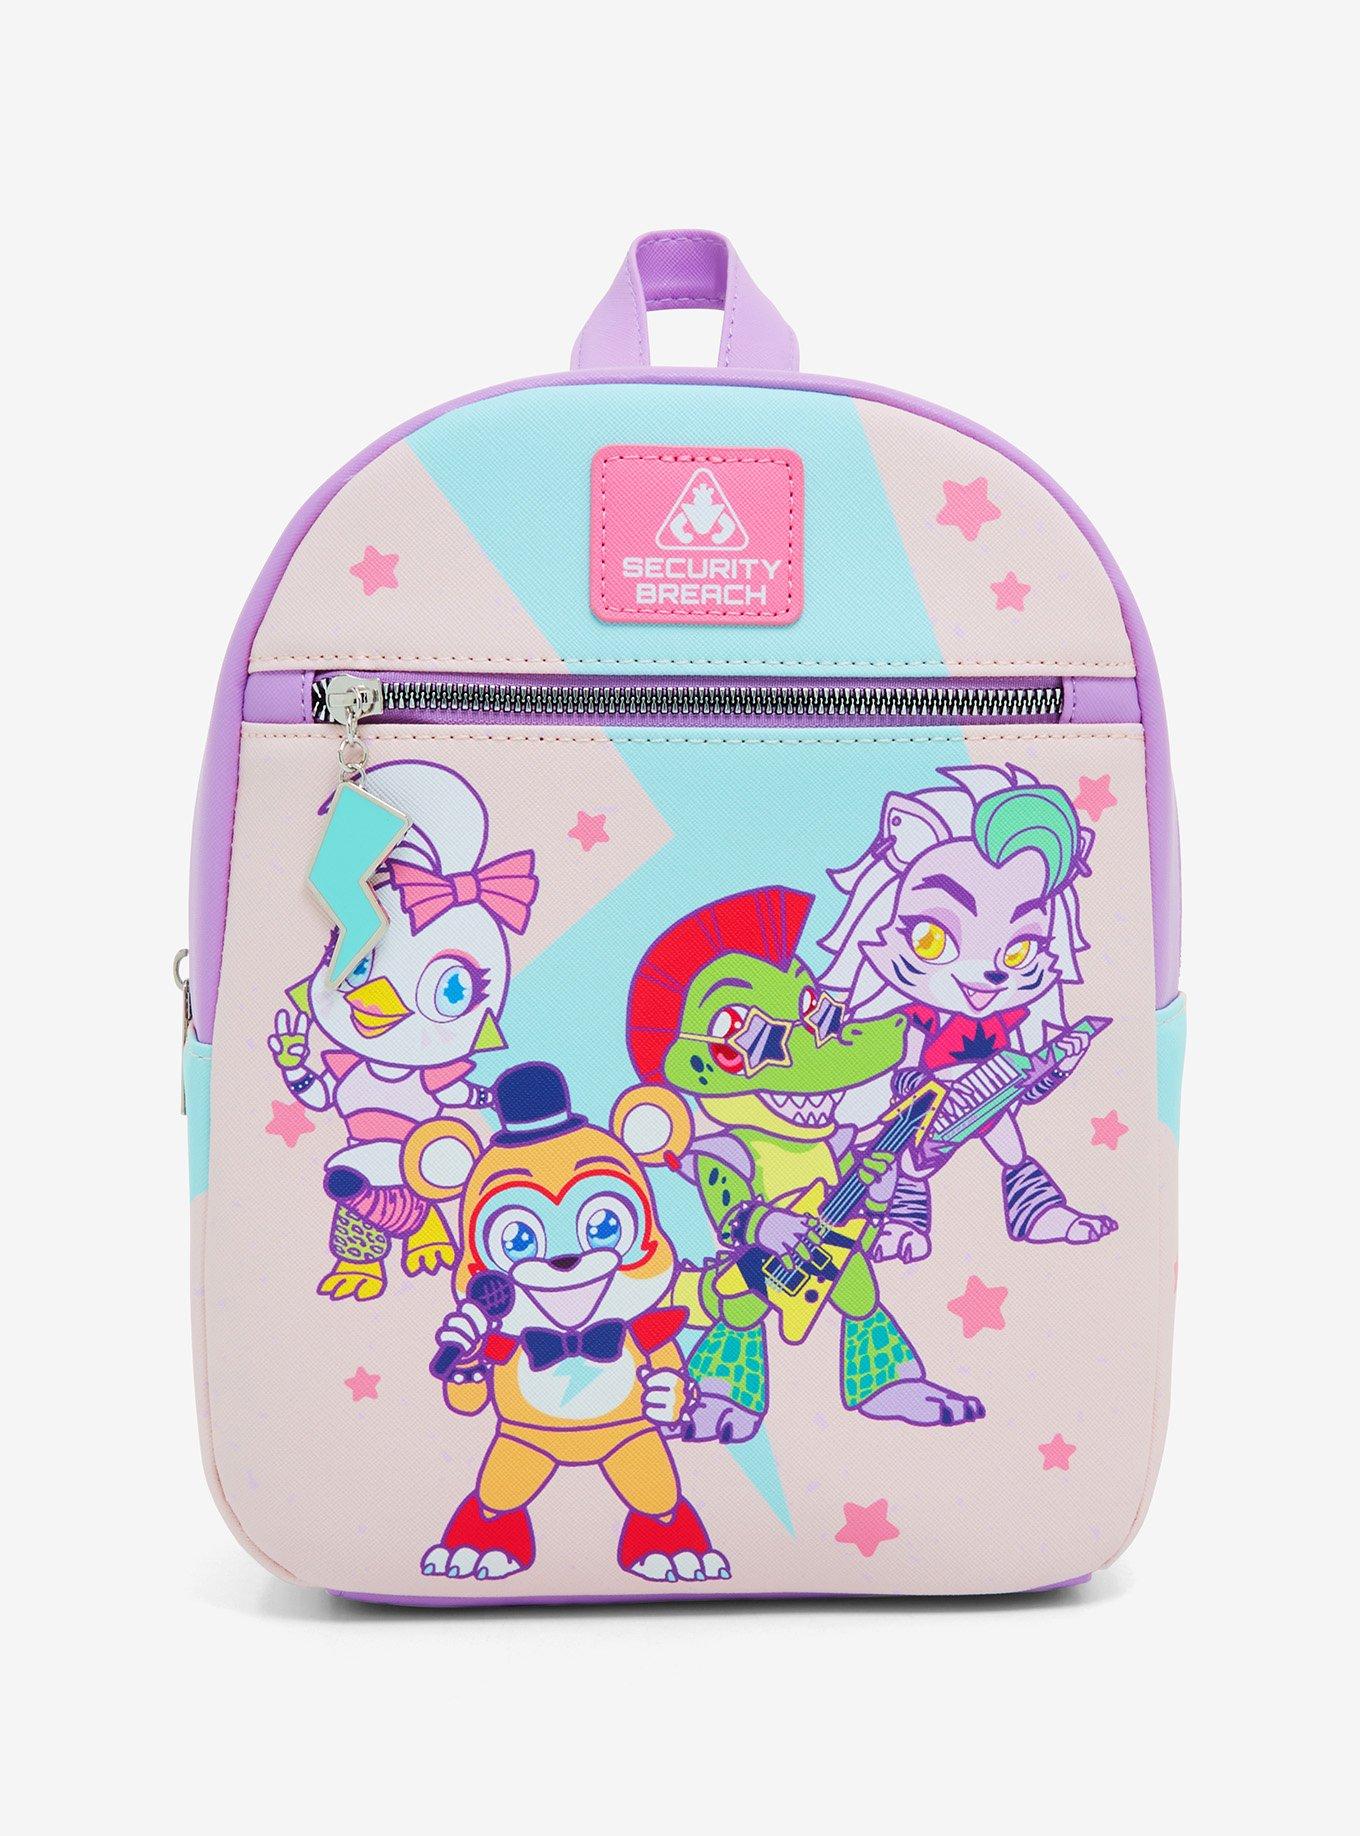 freddy school bag anime fnaf backpack boys girls